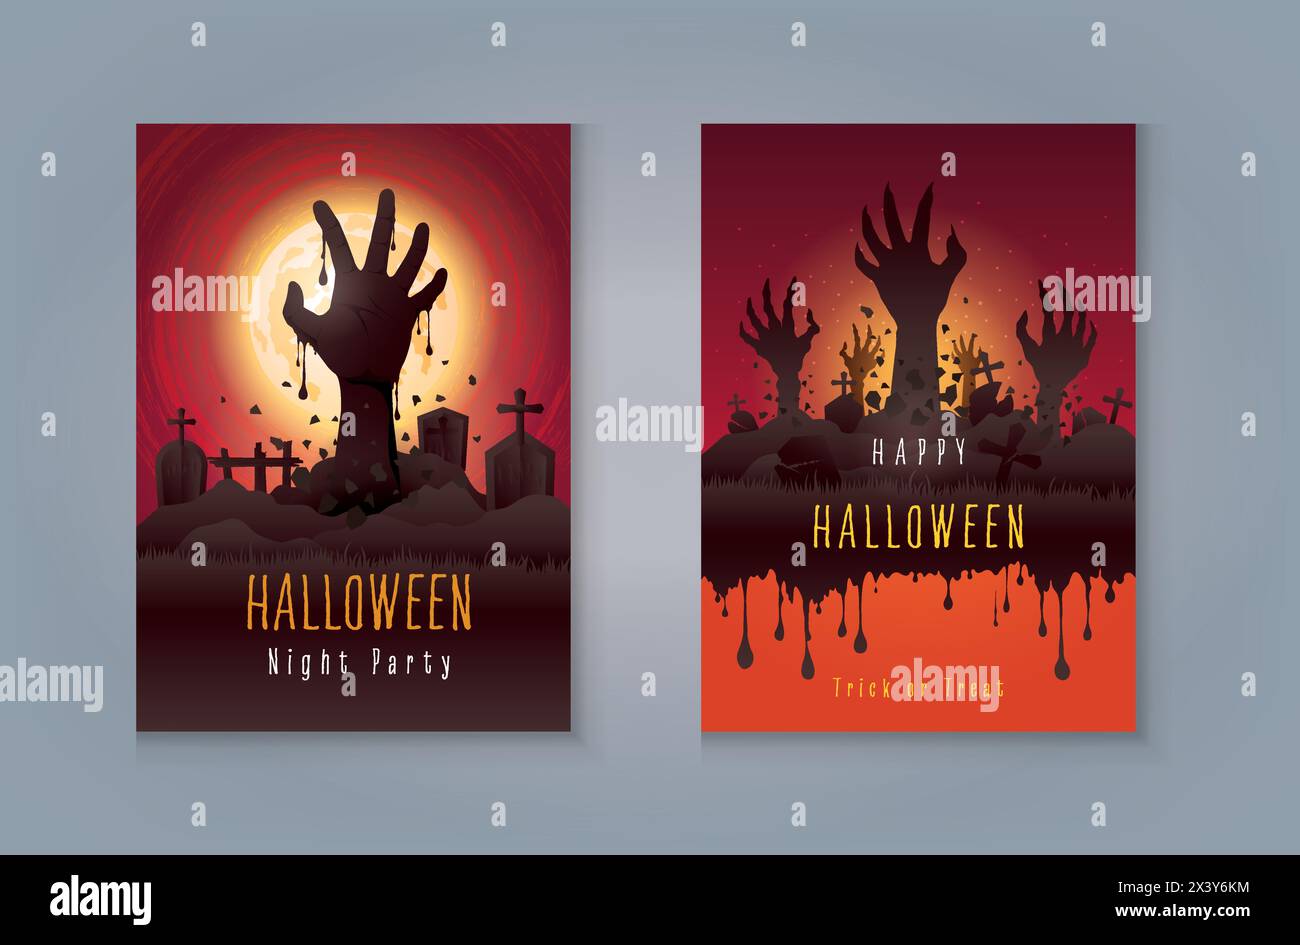 Happy Halloween Party, Zombie Hand erhebt sich aus dem Grab. Set mit abstraktem Halloween-Hintergrund für soziale Medien, Banner, Poster, Einladungskarte. Beängstigend Stock Vektor